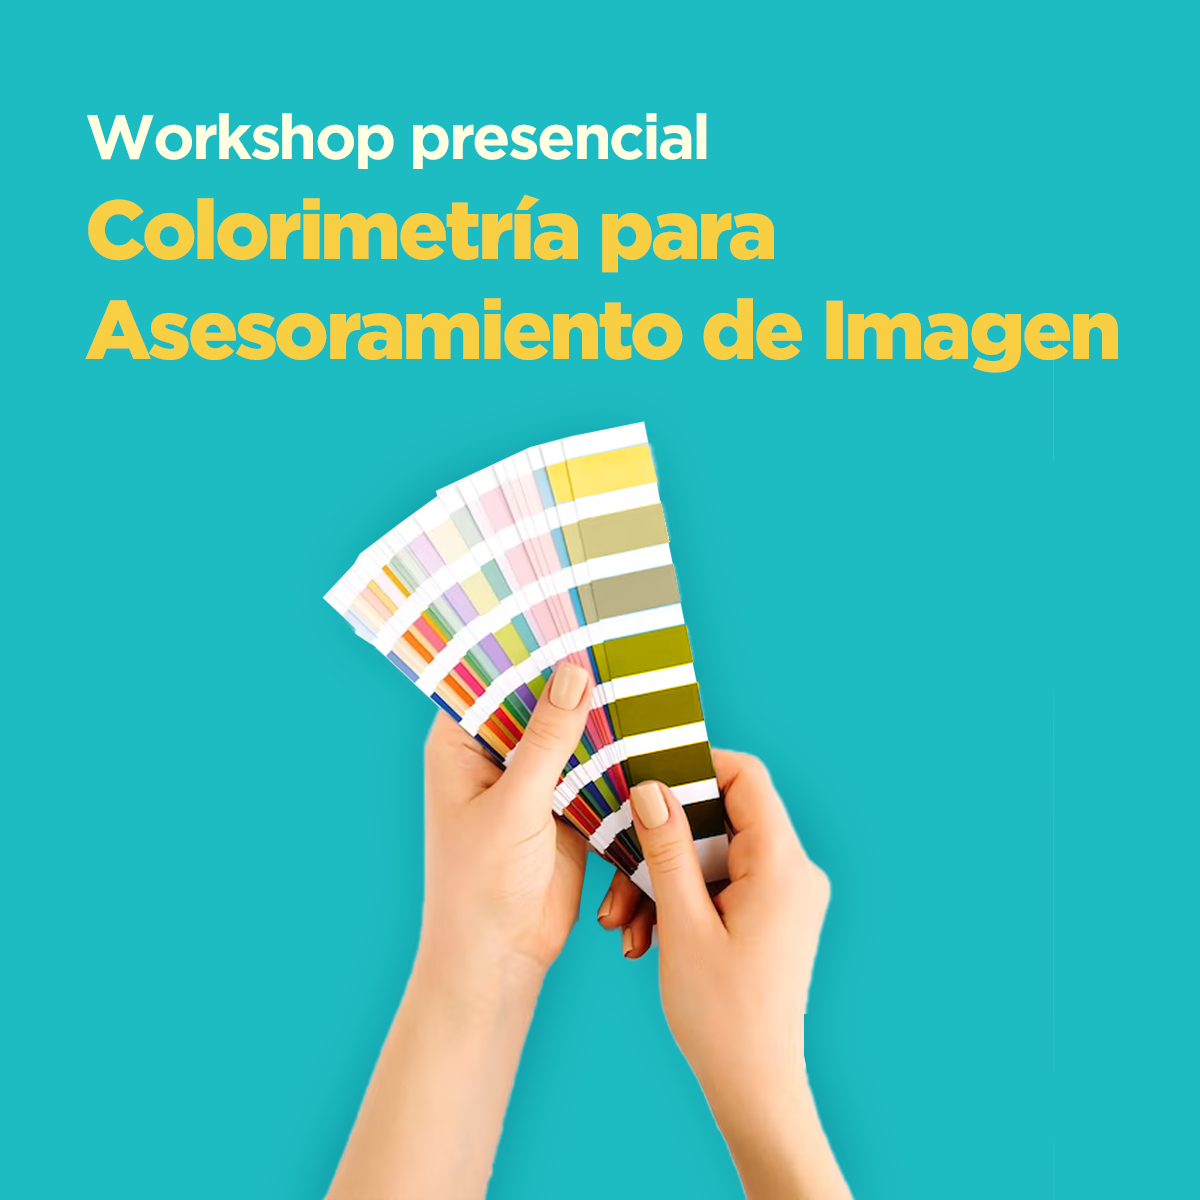 Workshop Colorimetria para asesoramiento de imagen